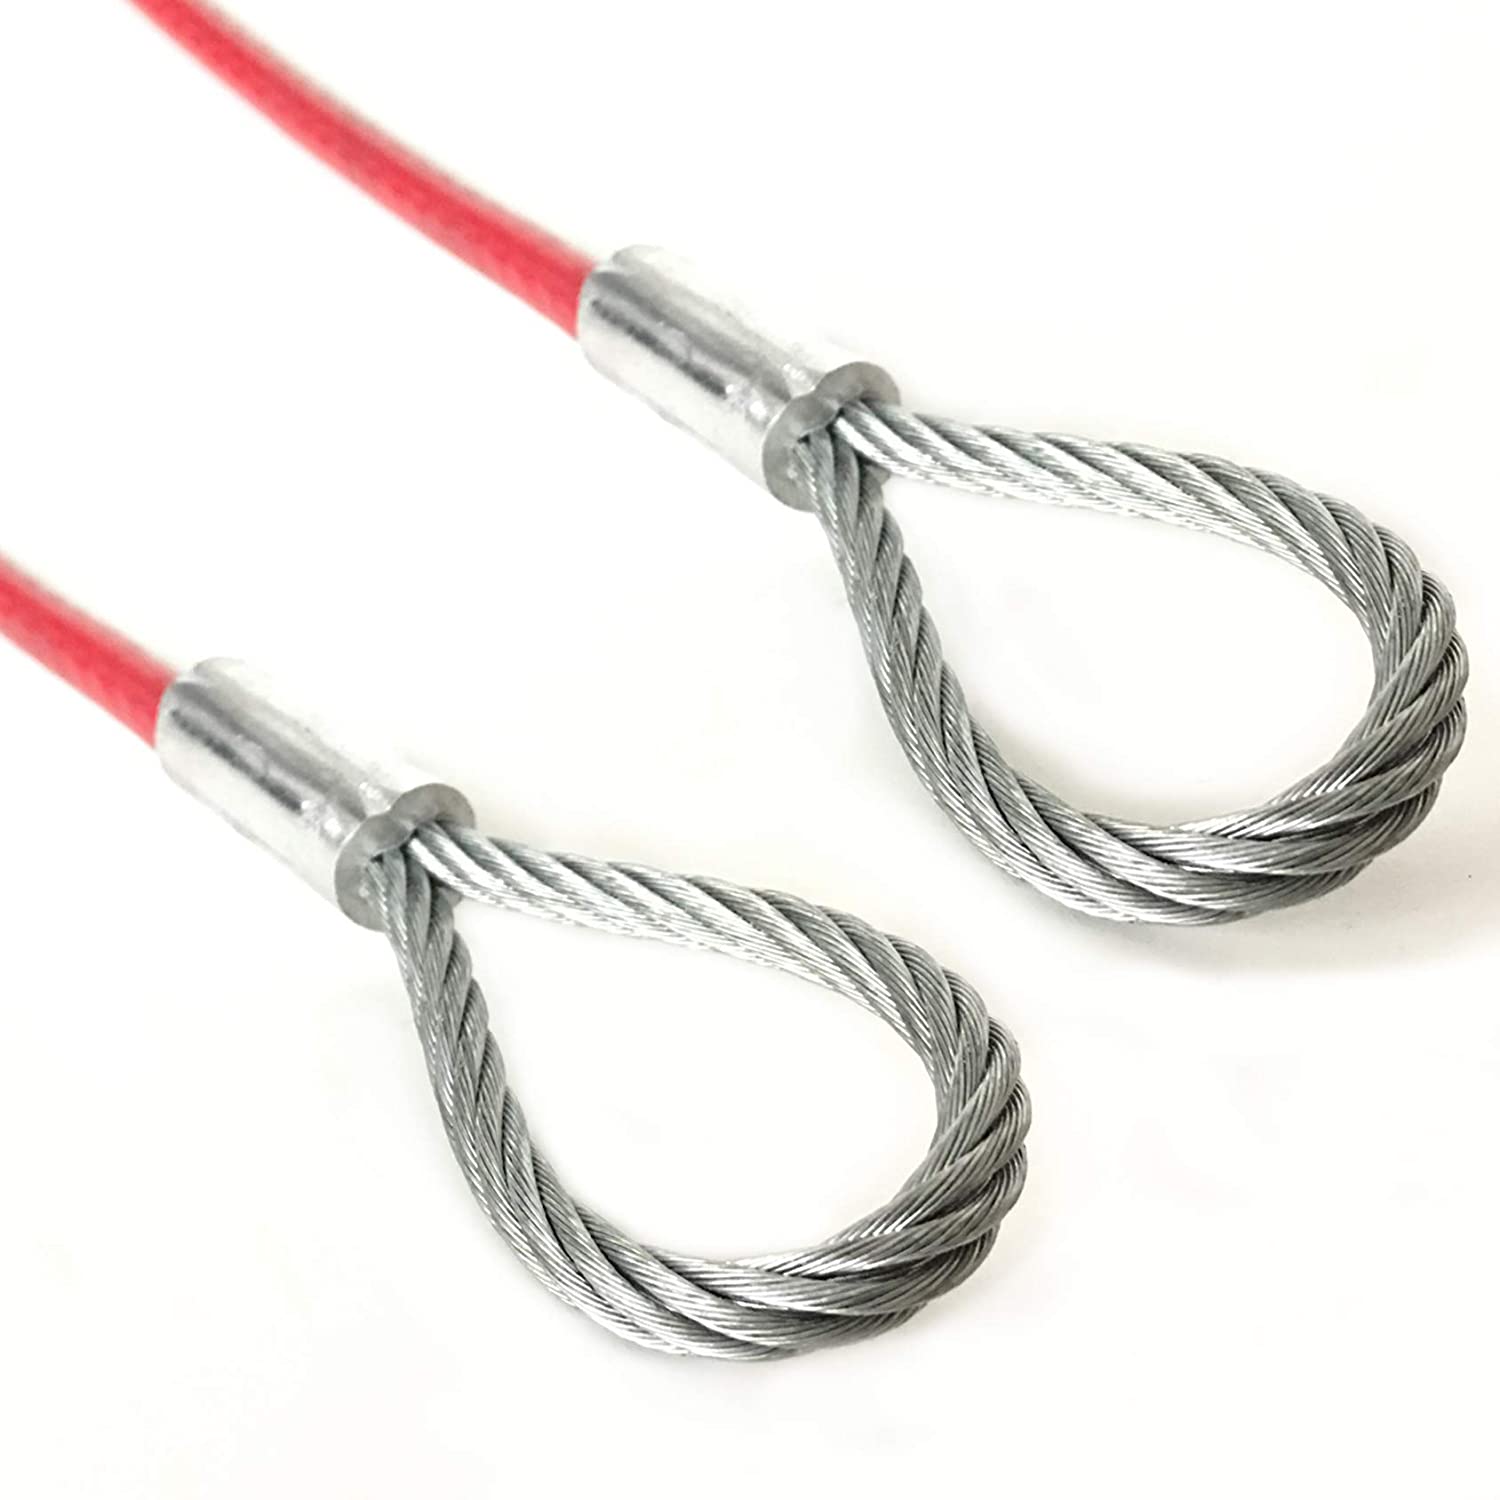 Steel-ferrule-secured Soft Loop Sling